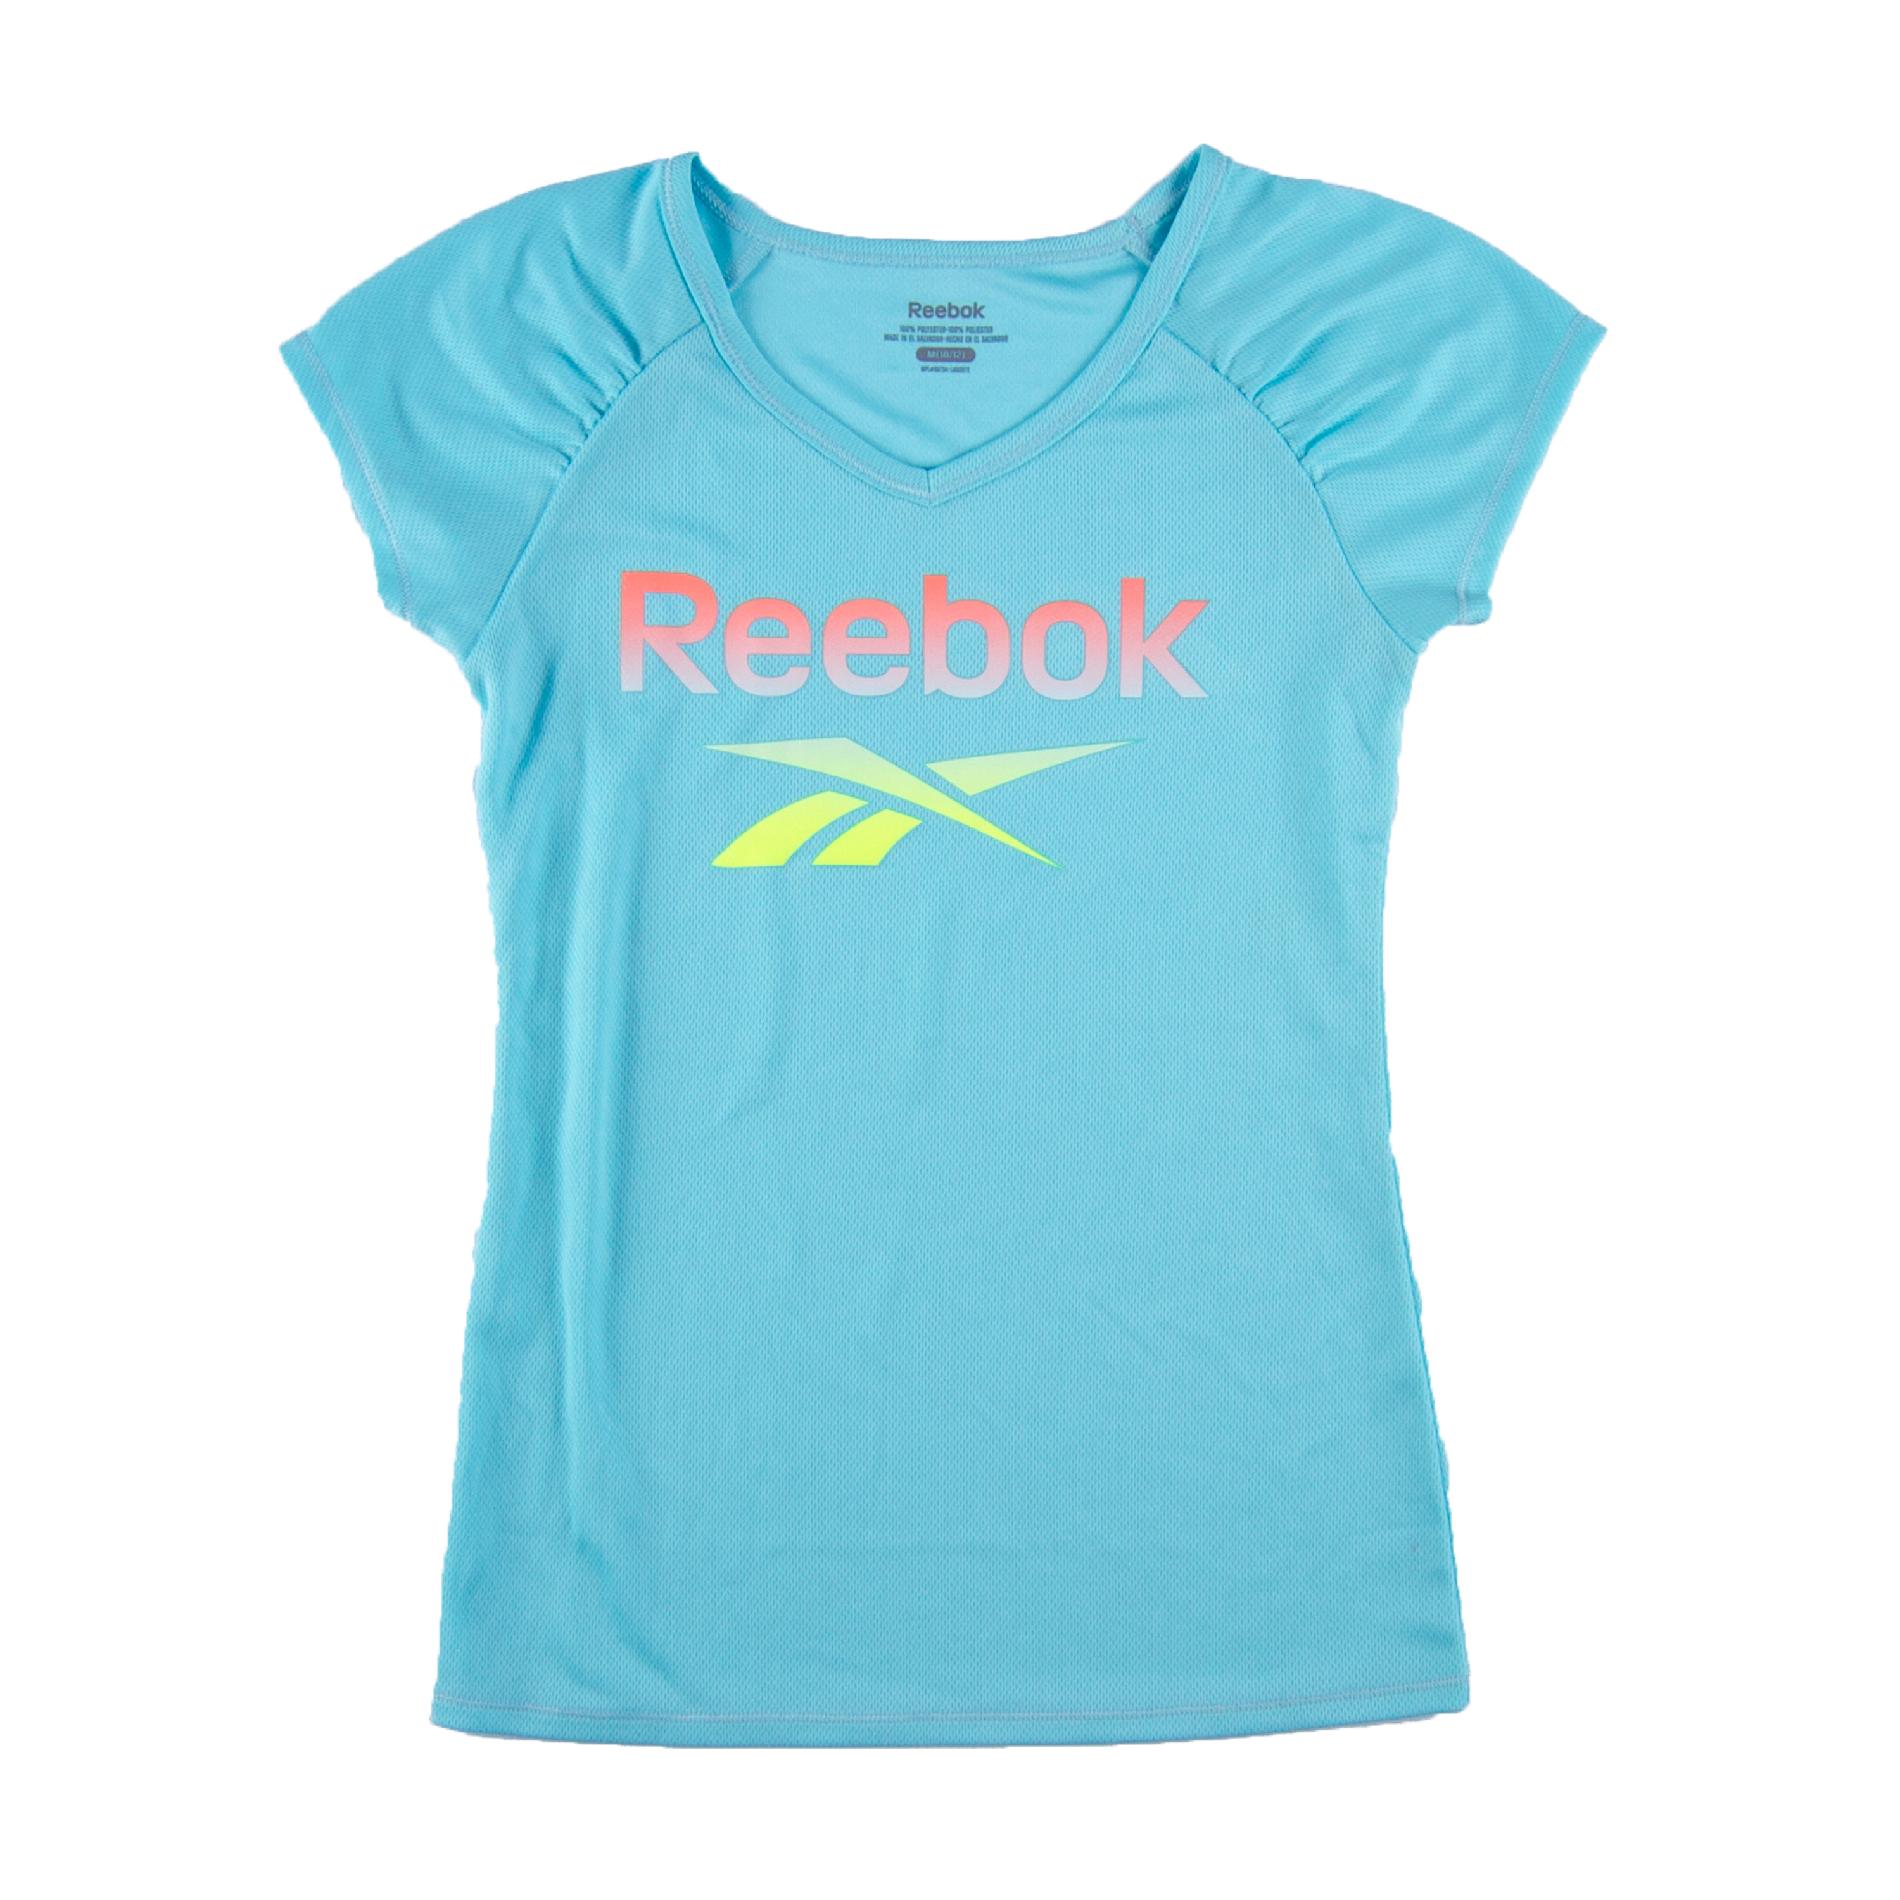 Reebok Girl's Short-Sleeve Athletic Top